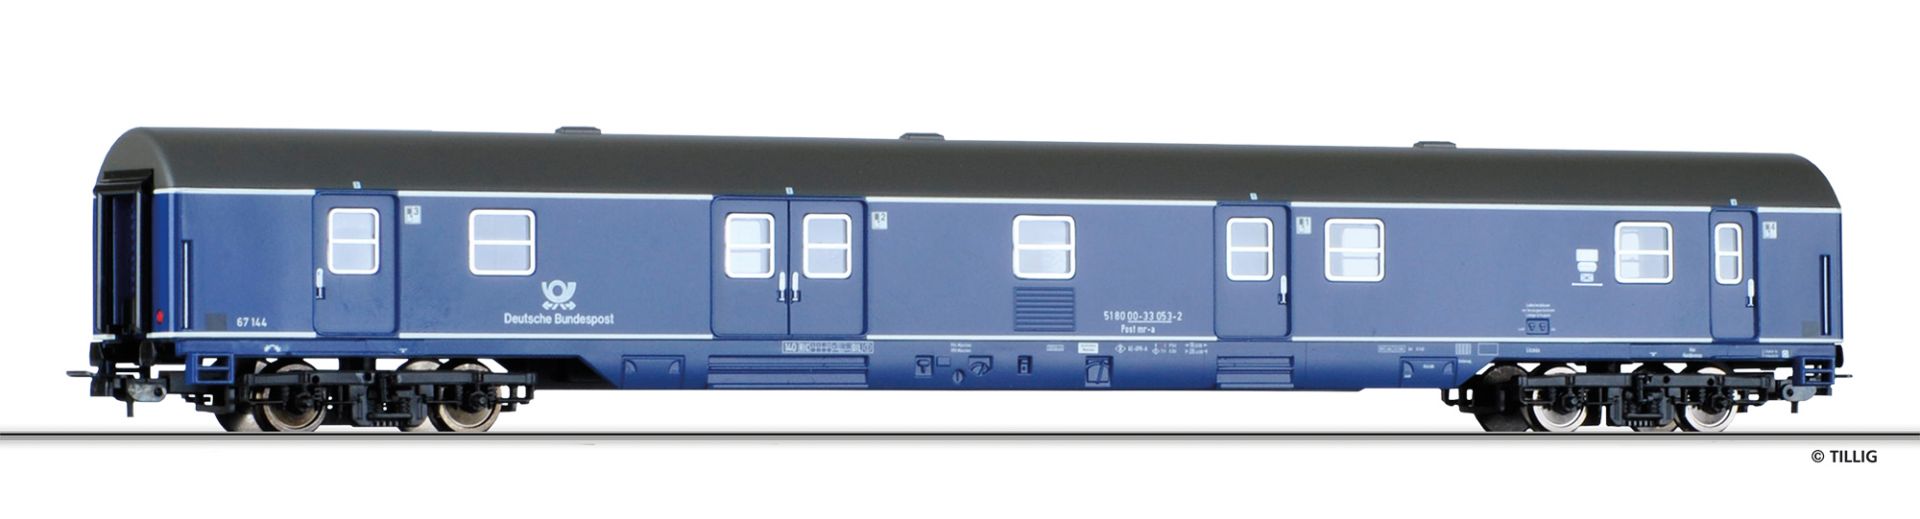 74890 | Bahnpostwagen Deutsche Bundespost -werksseitig ausverkauft-